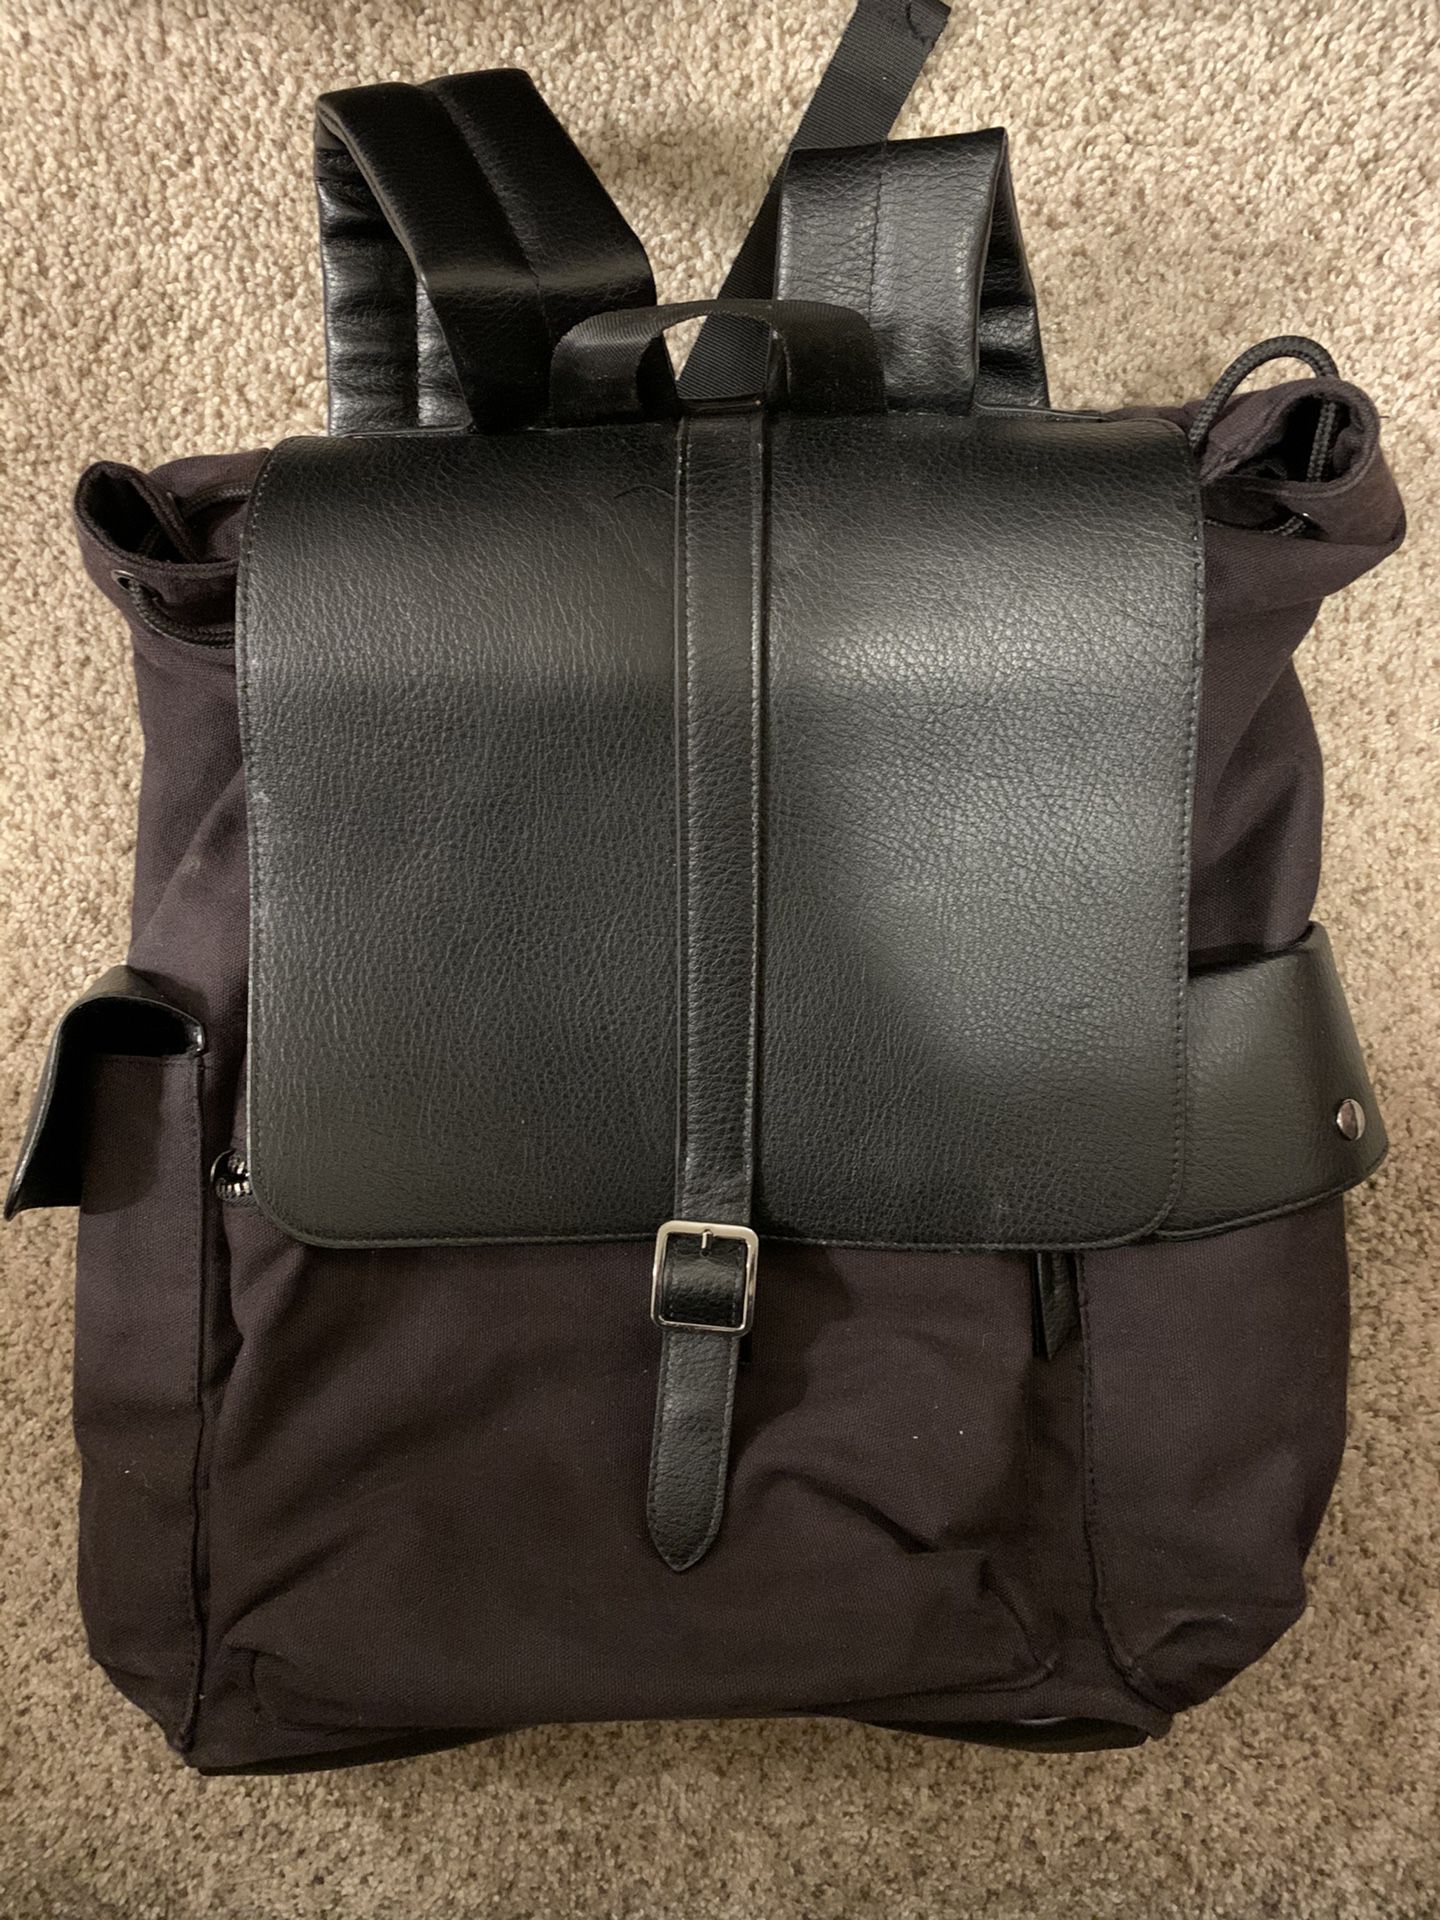 Old Navy Backpack/Messenger Bag